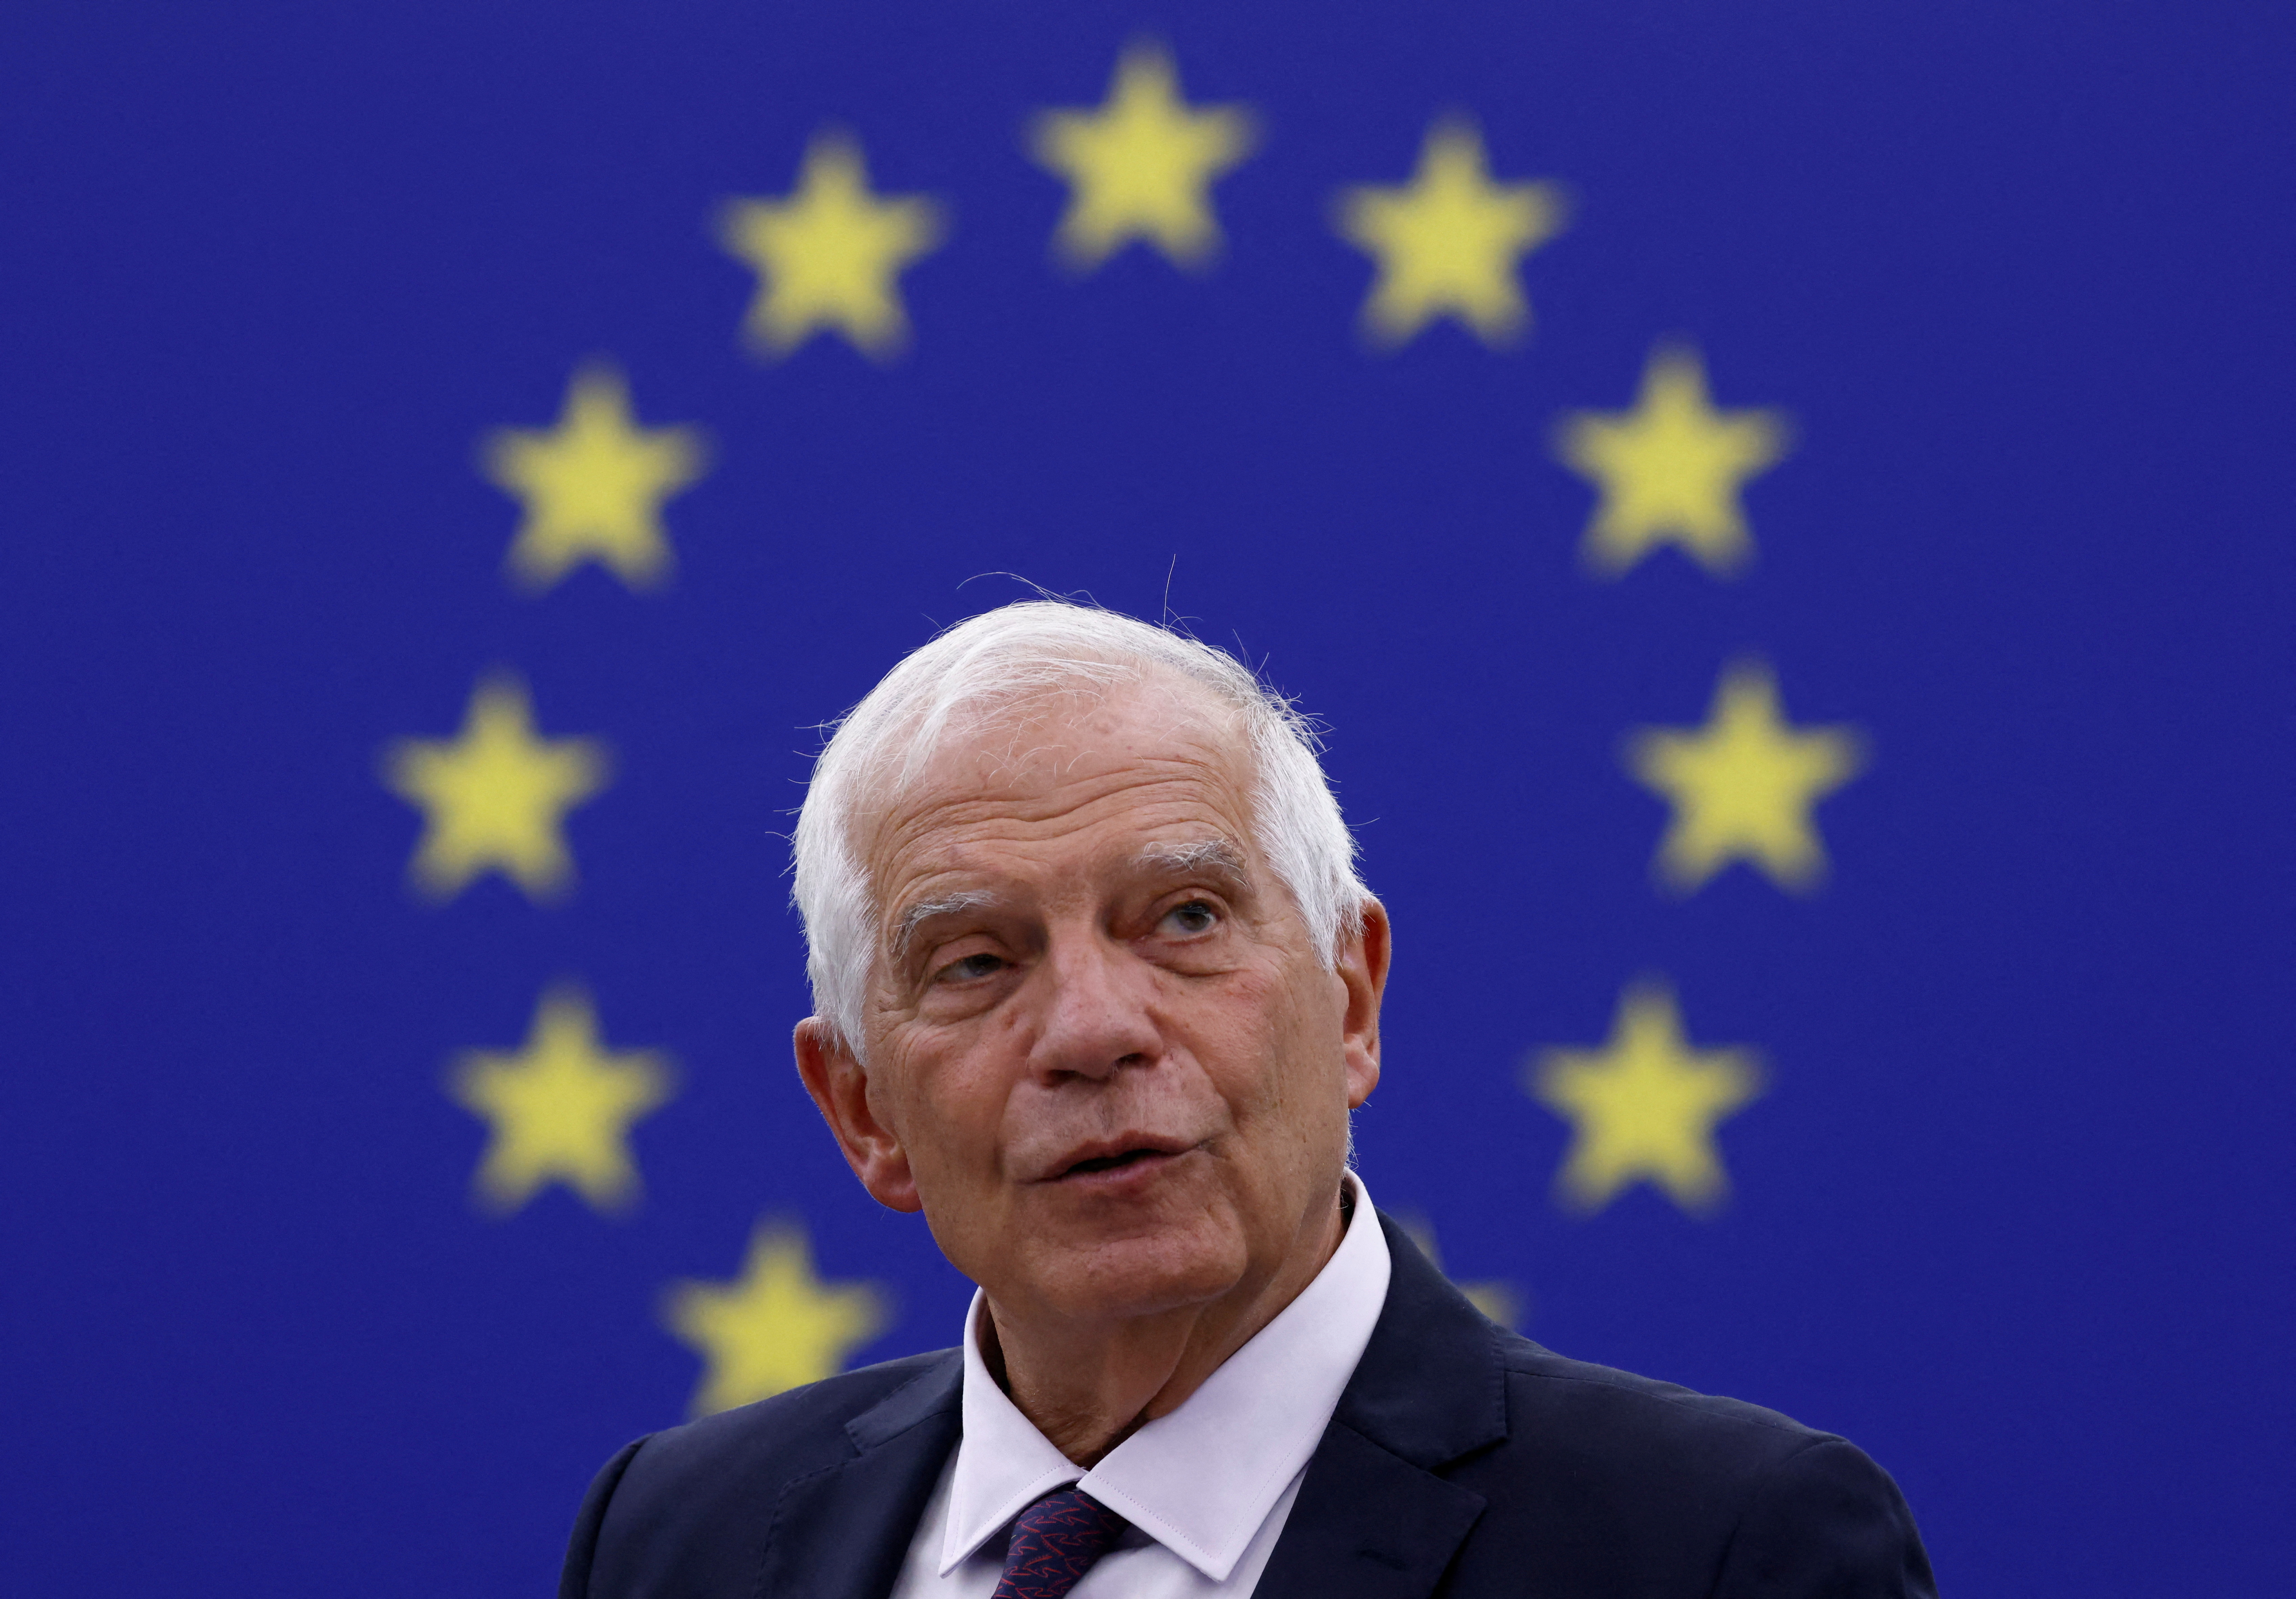 El jefe de la política exterior de la UE, Josep Borrell, se dirige a una sesión plenaria del Parlamento Europeo en Estrasburgo, Francia, el 13 de septiembre de 2022. REUTERS/Yves Herman/Archivo